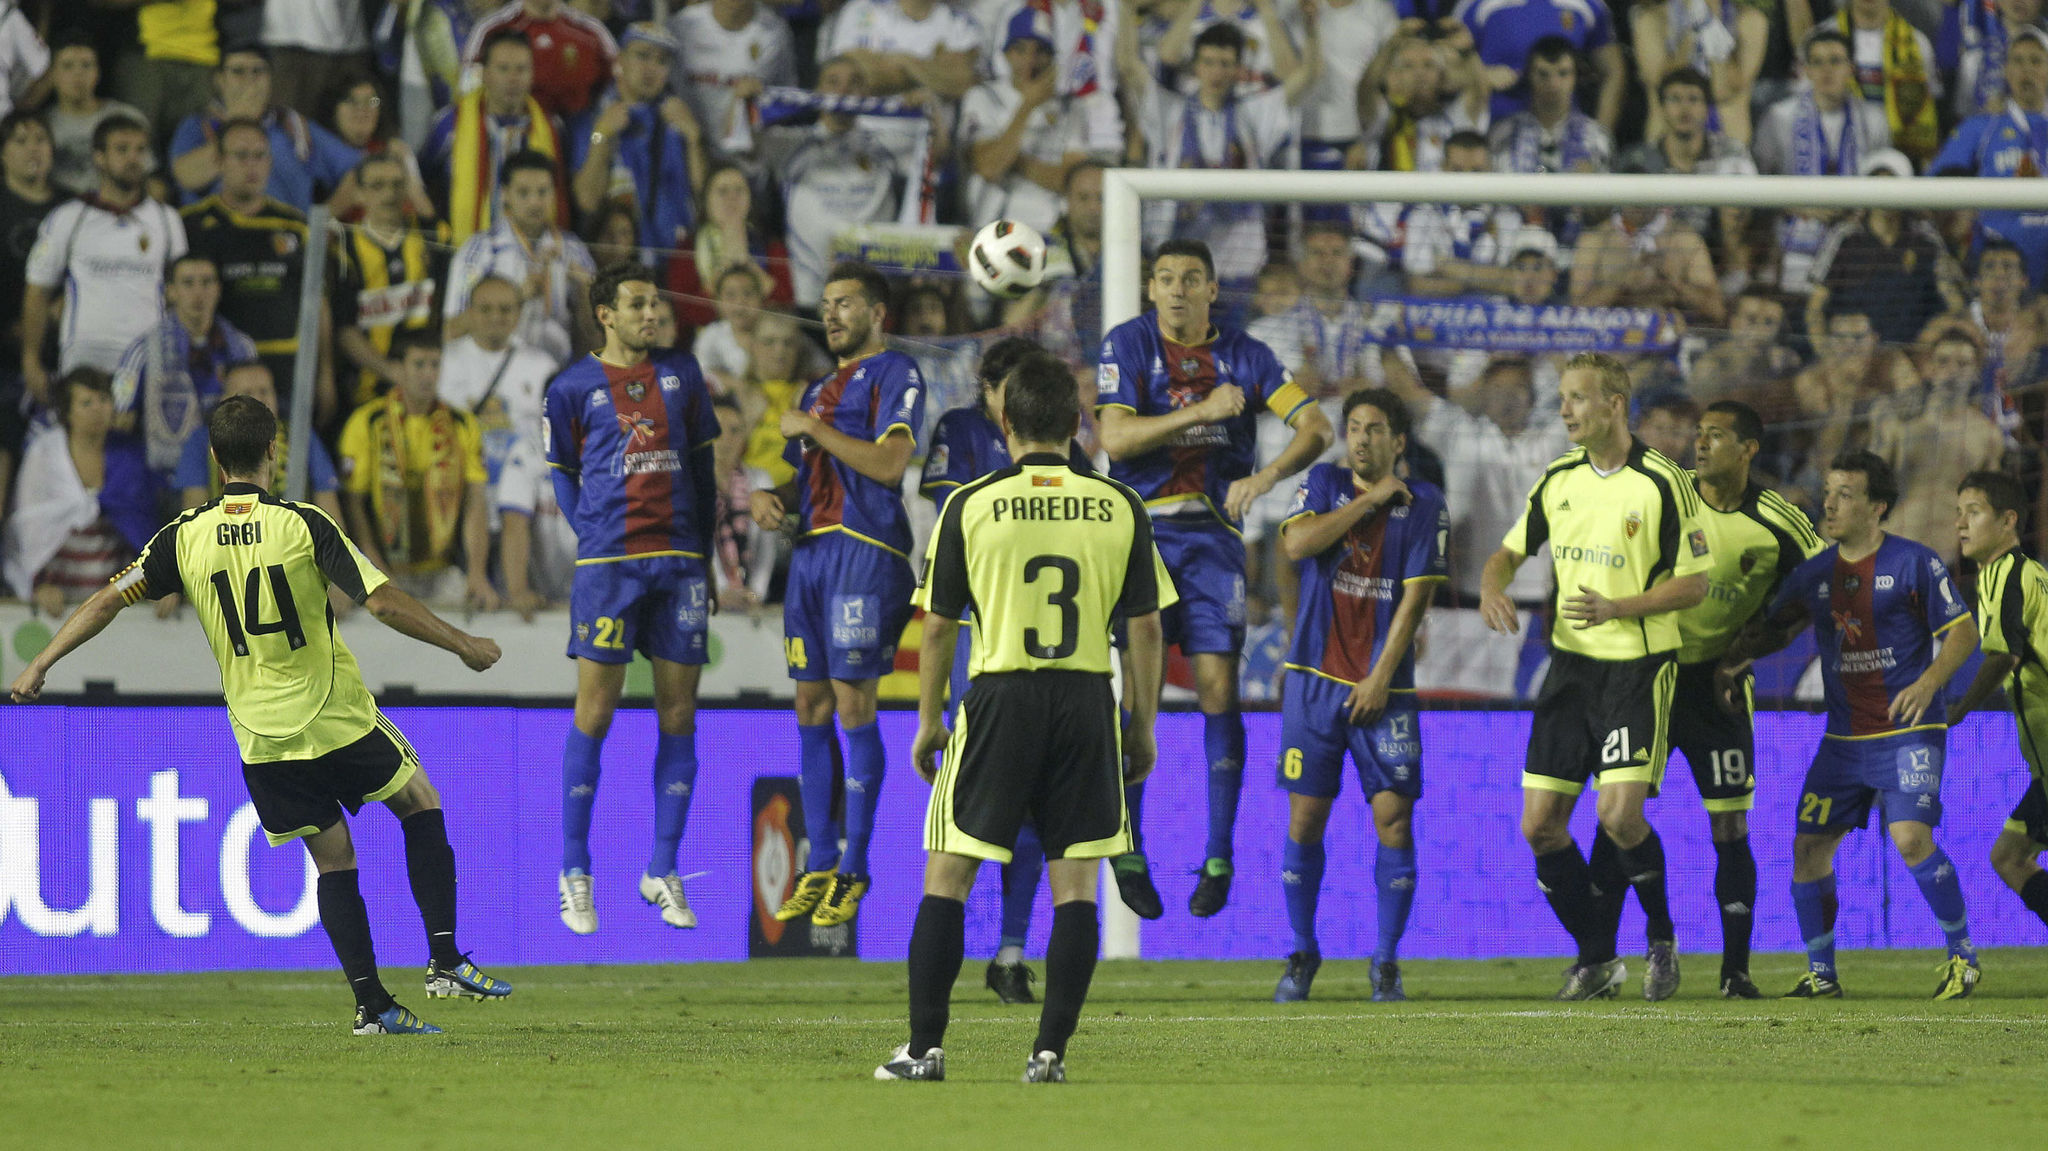 Gabi, en uno de los goles de aquel partido Levante-Zaragoza 2010-11,...